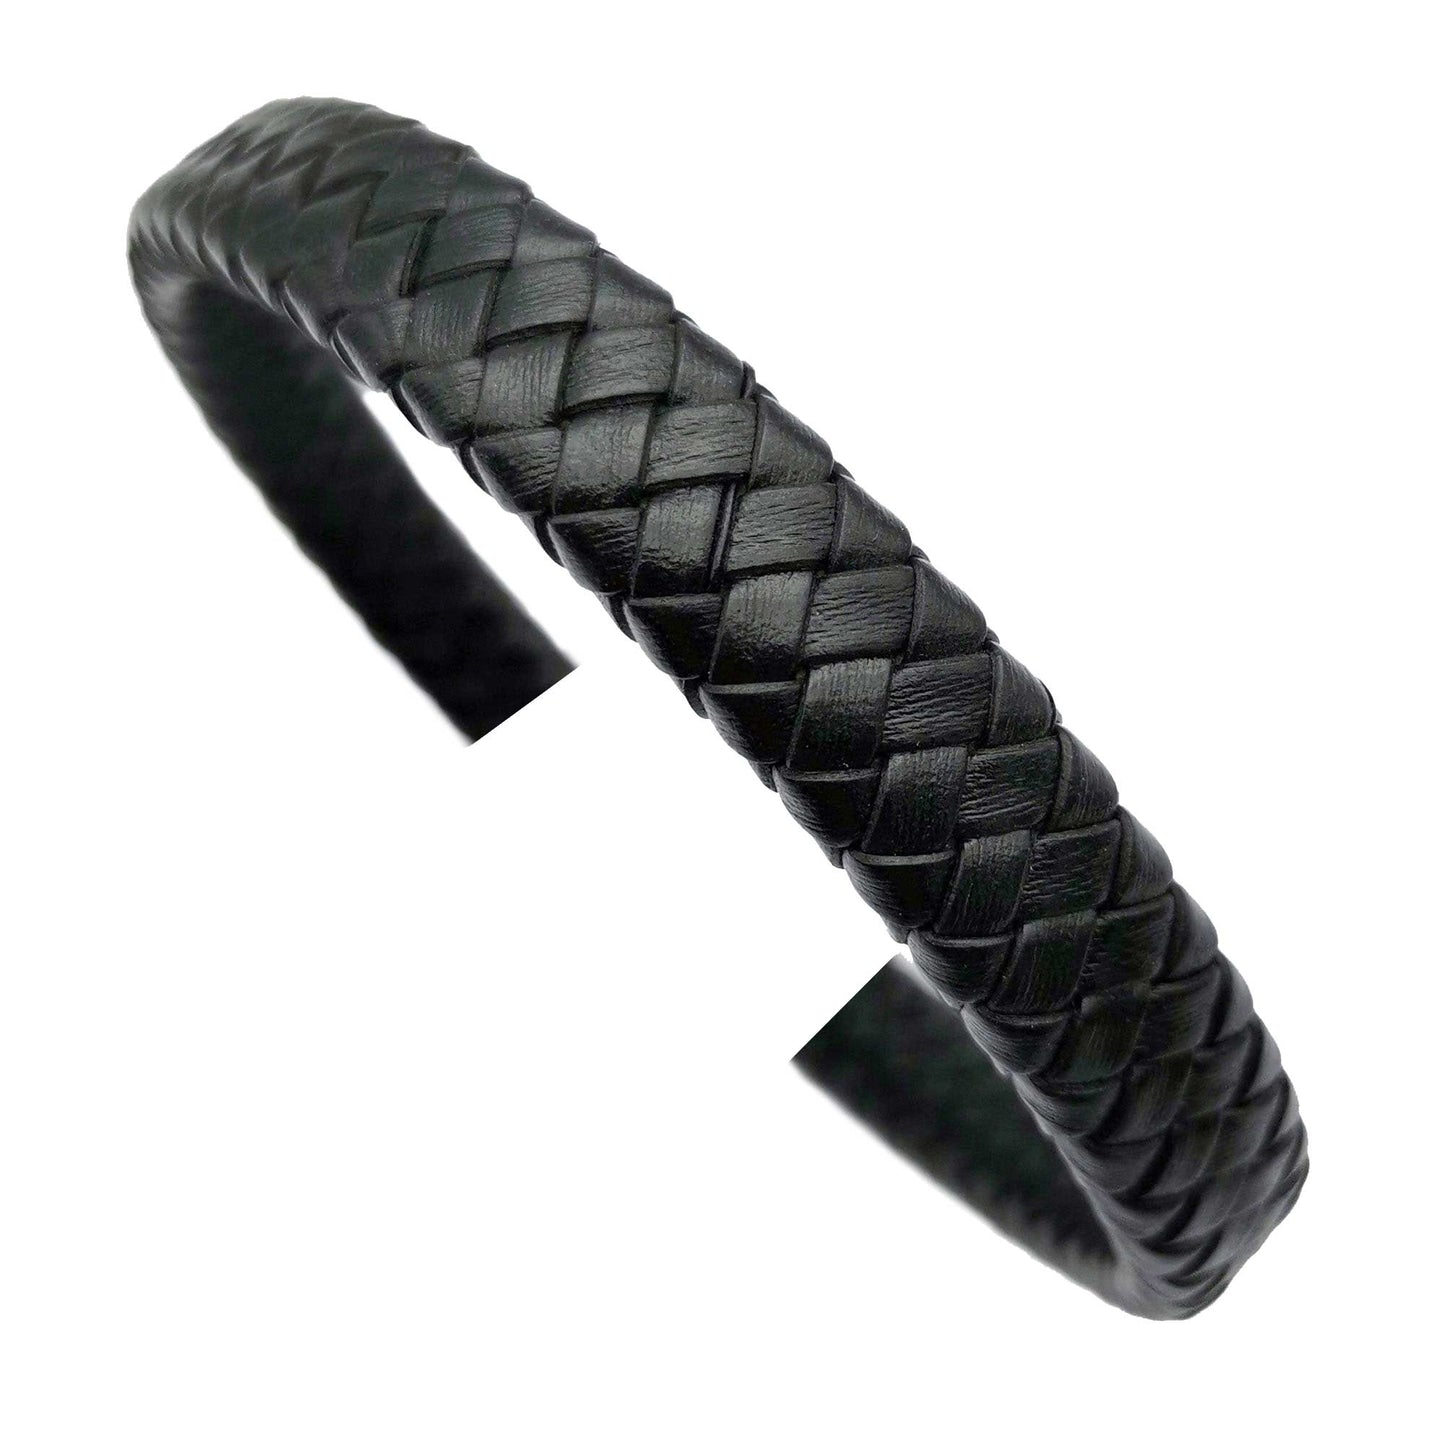 ShapesbyX-Distressed Purple 12 mm x 6 mm geflochtenes Lederband, geflochtenes Armband, Herstellung von Lederband, Schmuck, Basteln